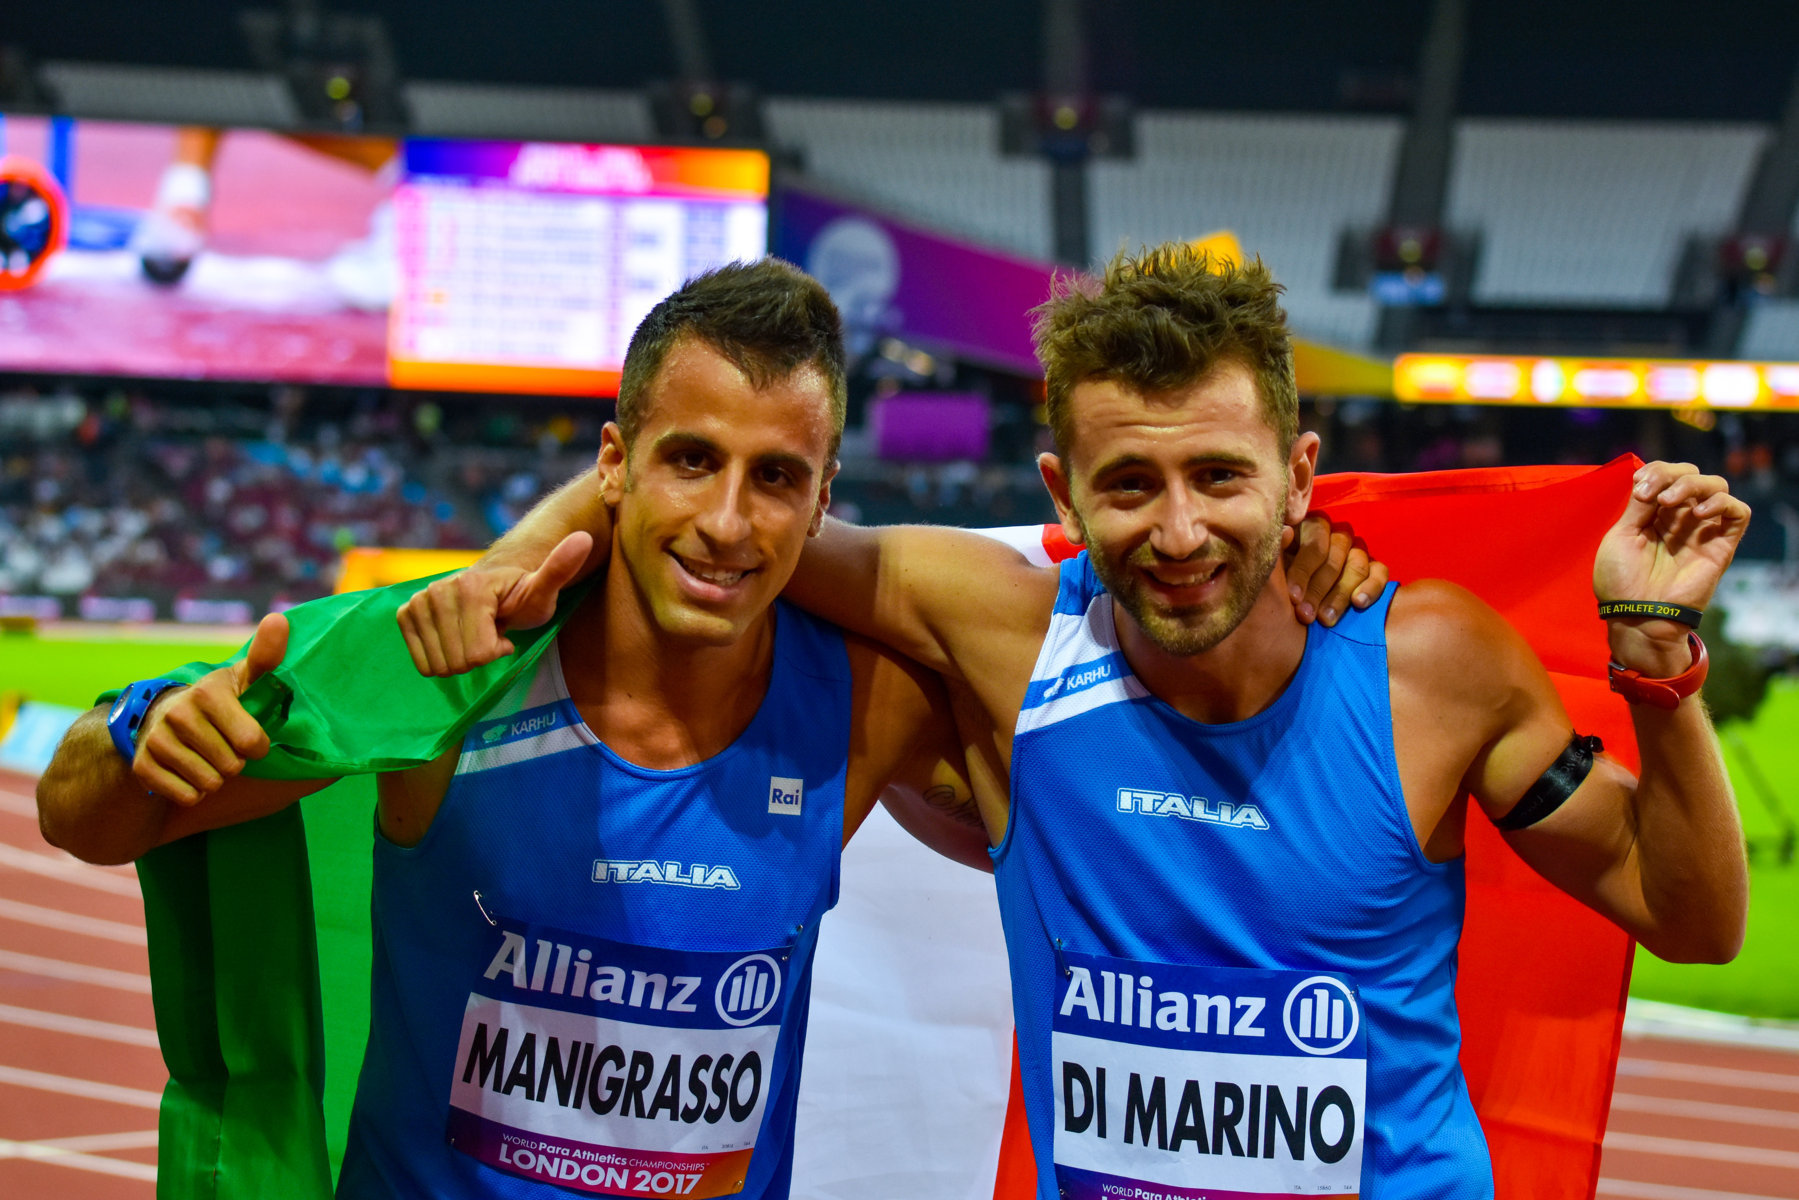 londra 2017 argento Manigrasso bronzo Di Marino nei 400